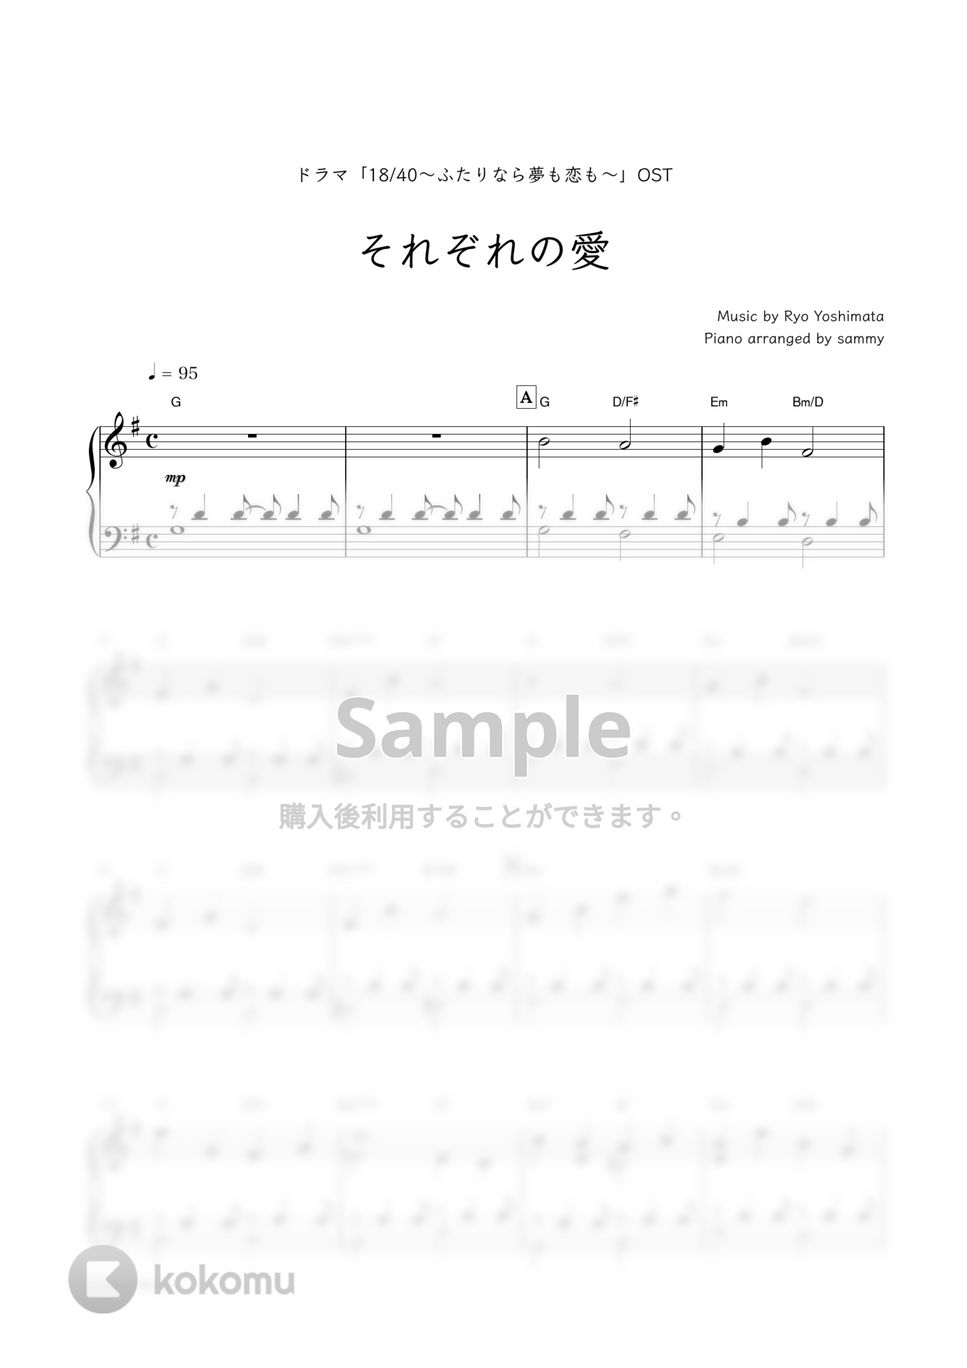 ドラマ『18/40〜ふたりなら夢も恋も〜』OST - それぞれの愛 by sammy